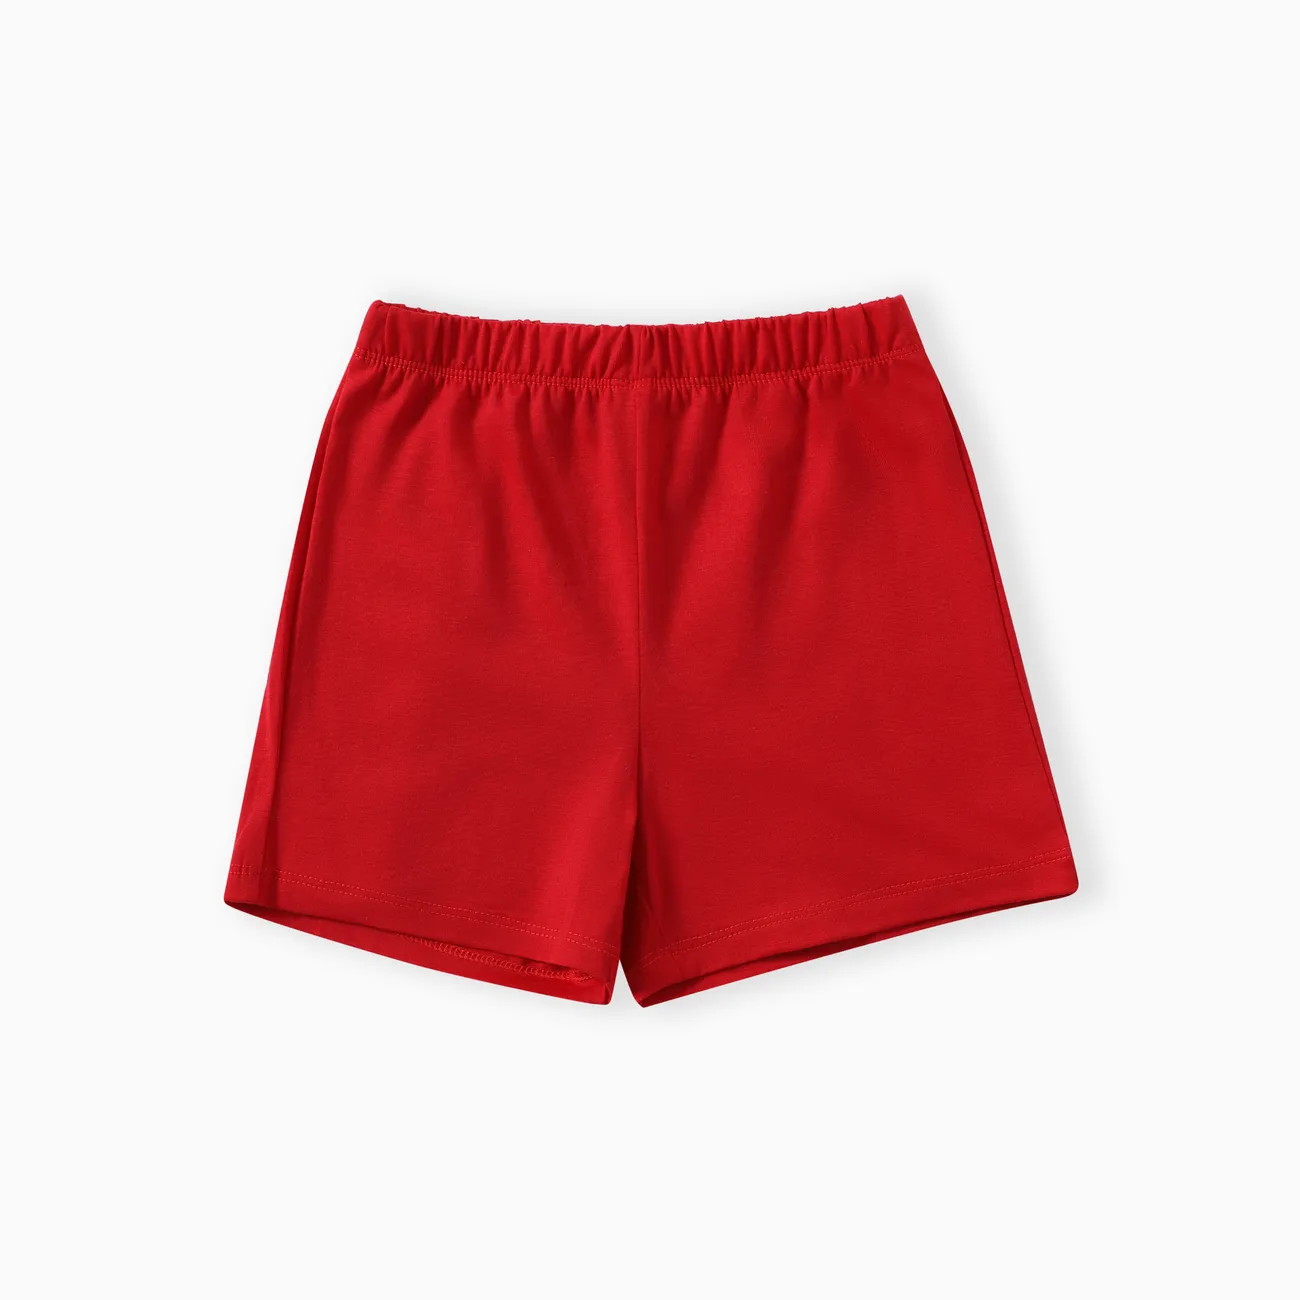 Niño pequeño / niño niño / niña 2 piezas de juego de pijamas de solapa de color sólido Rojo big image 1